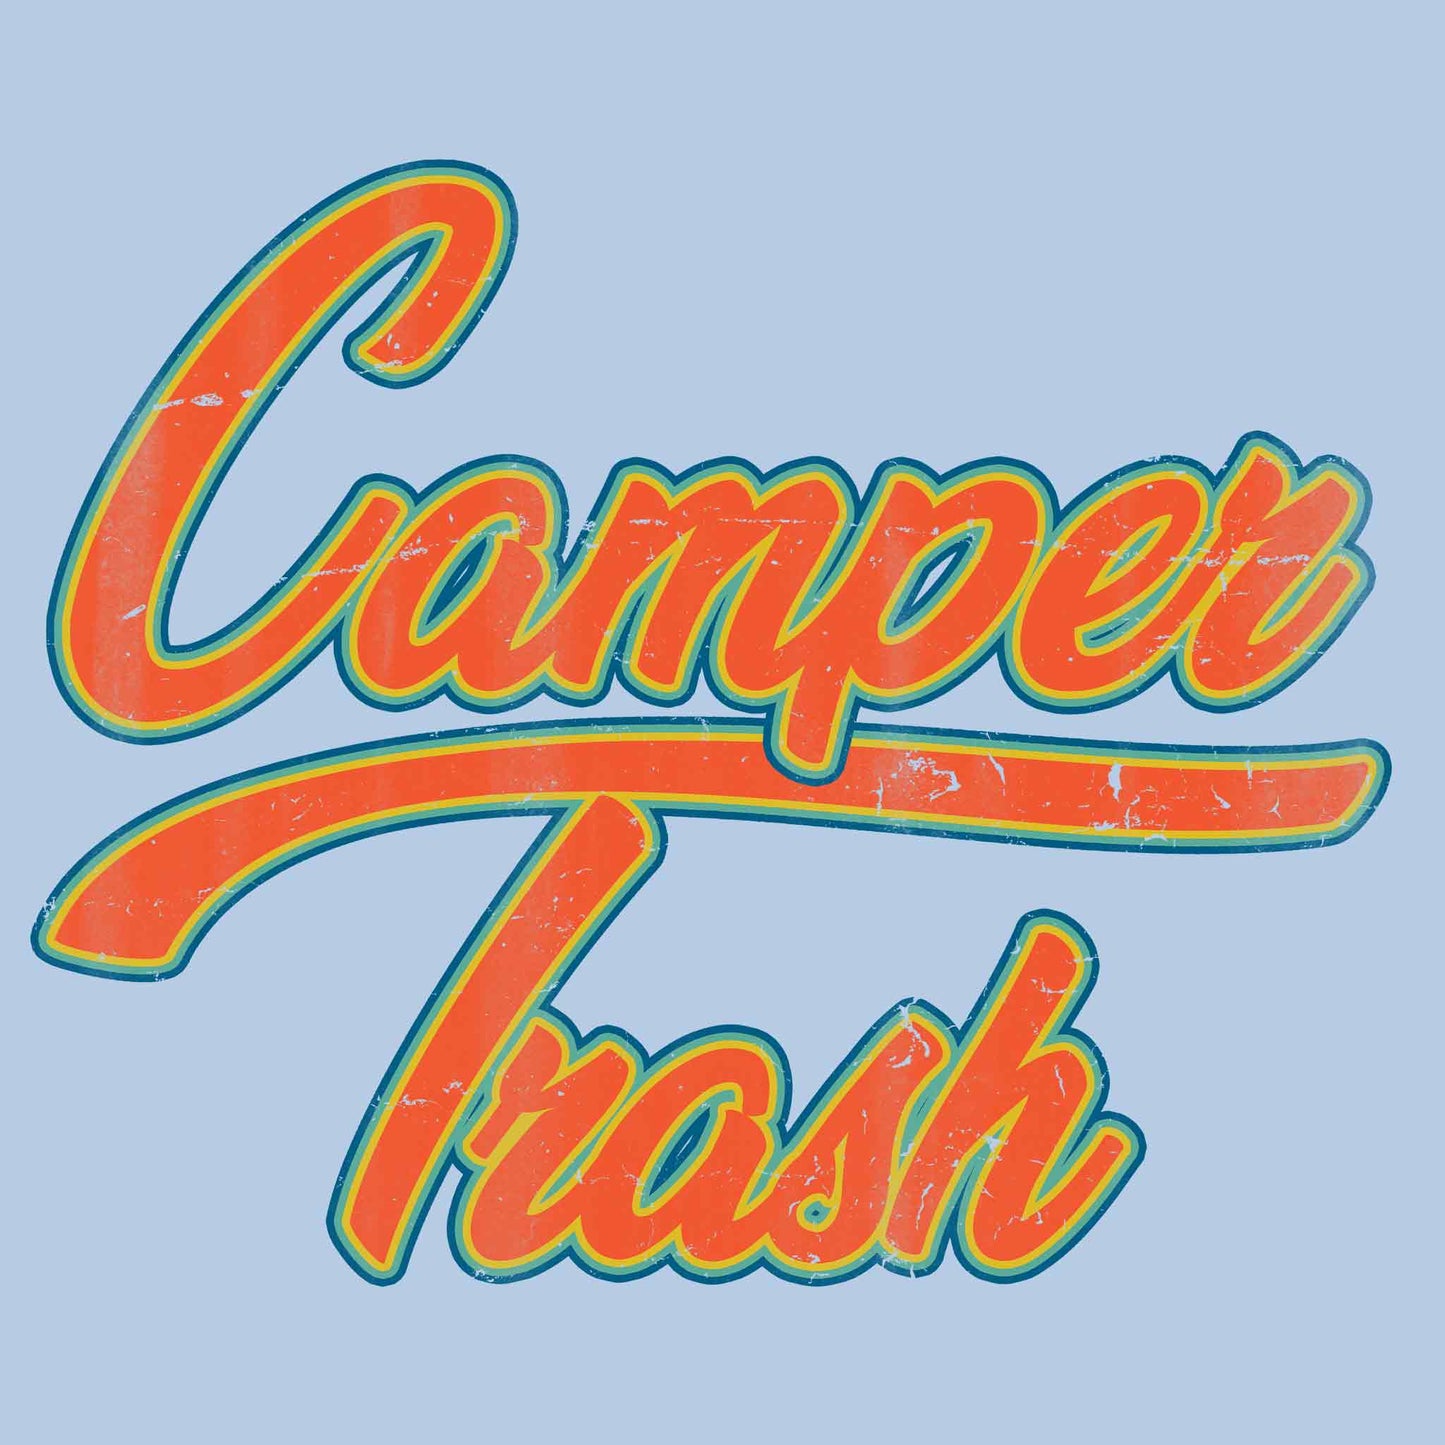 Camper Trash T-Shirt